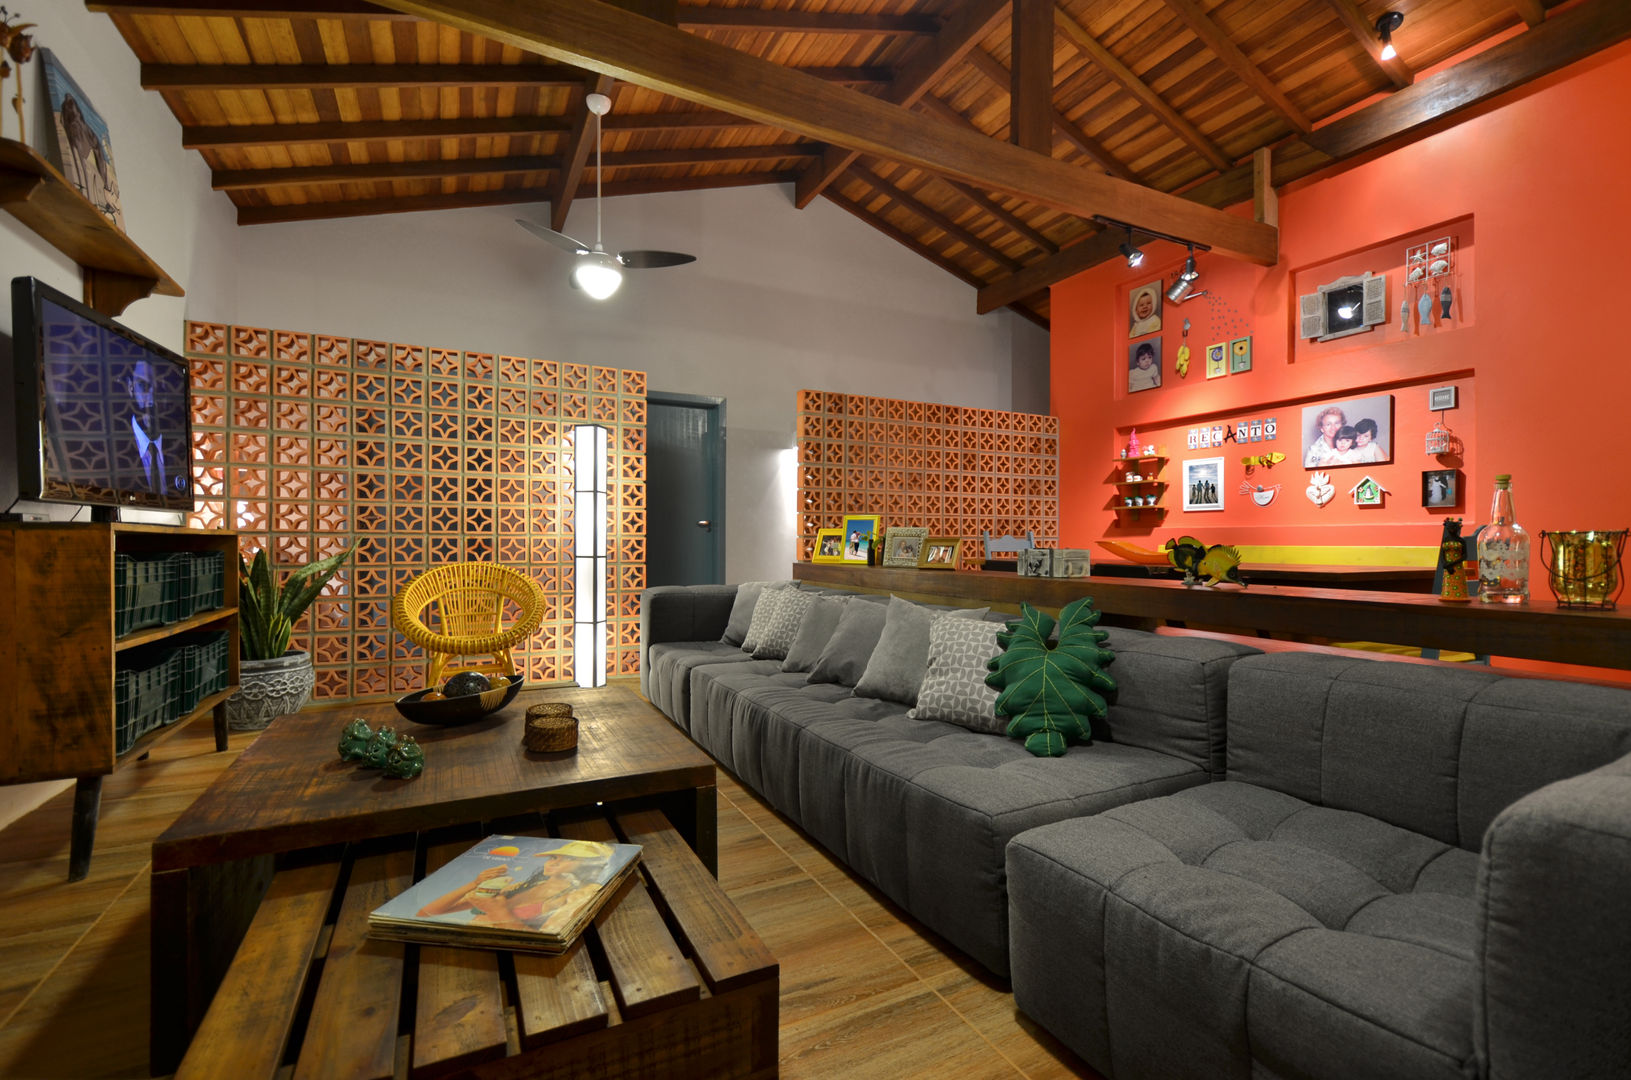 BEACH HOUSE, Arquitetando ideias Arquitetando ideias Tropical style living room